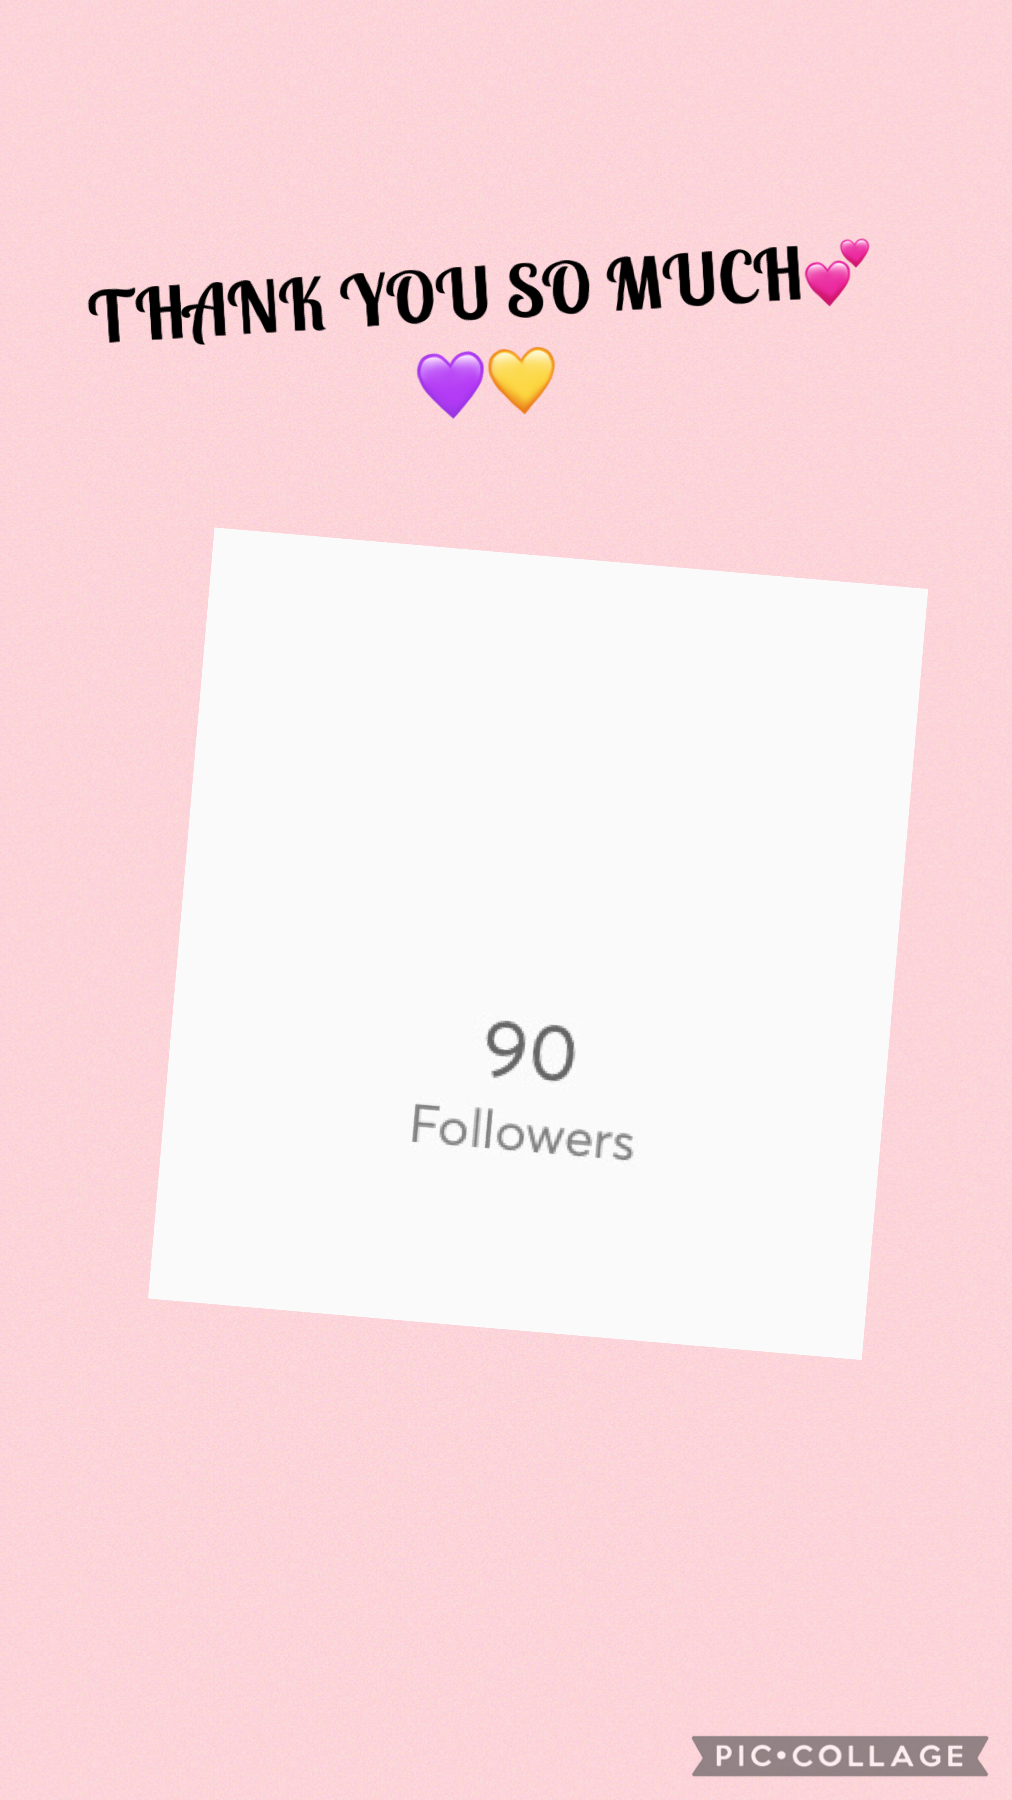 Thx for 90 followers 💕